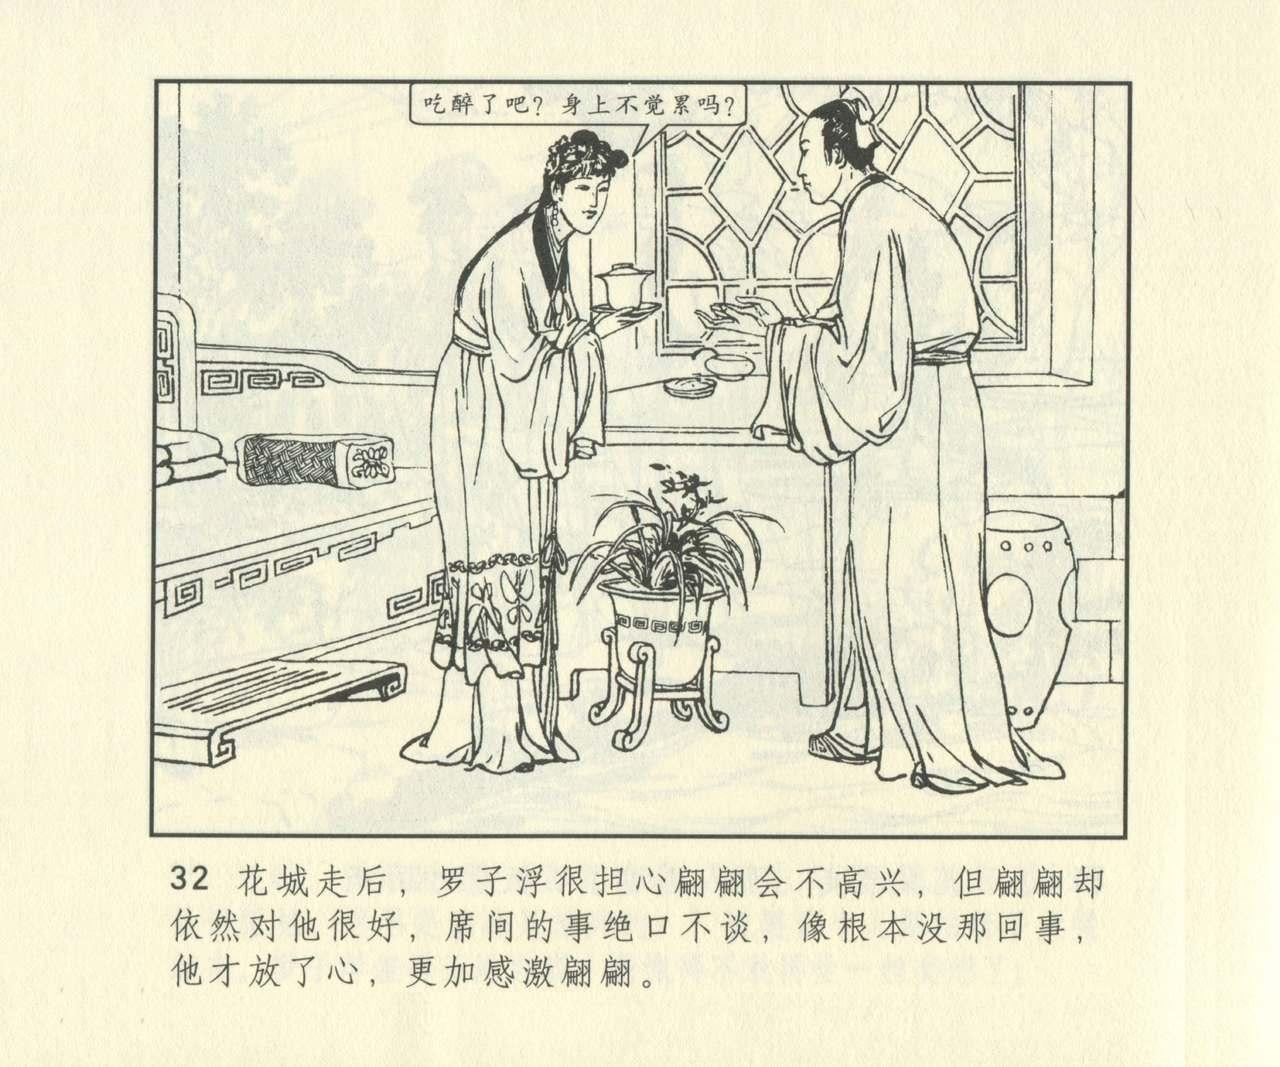 聊斋志异 张玮等绘 天津人民美术出版社 卷二十一 ~ 三十 648